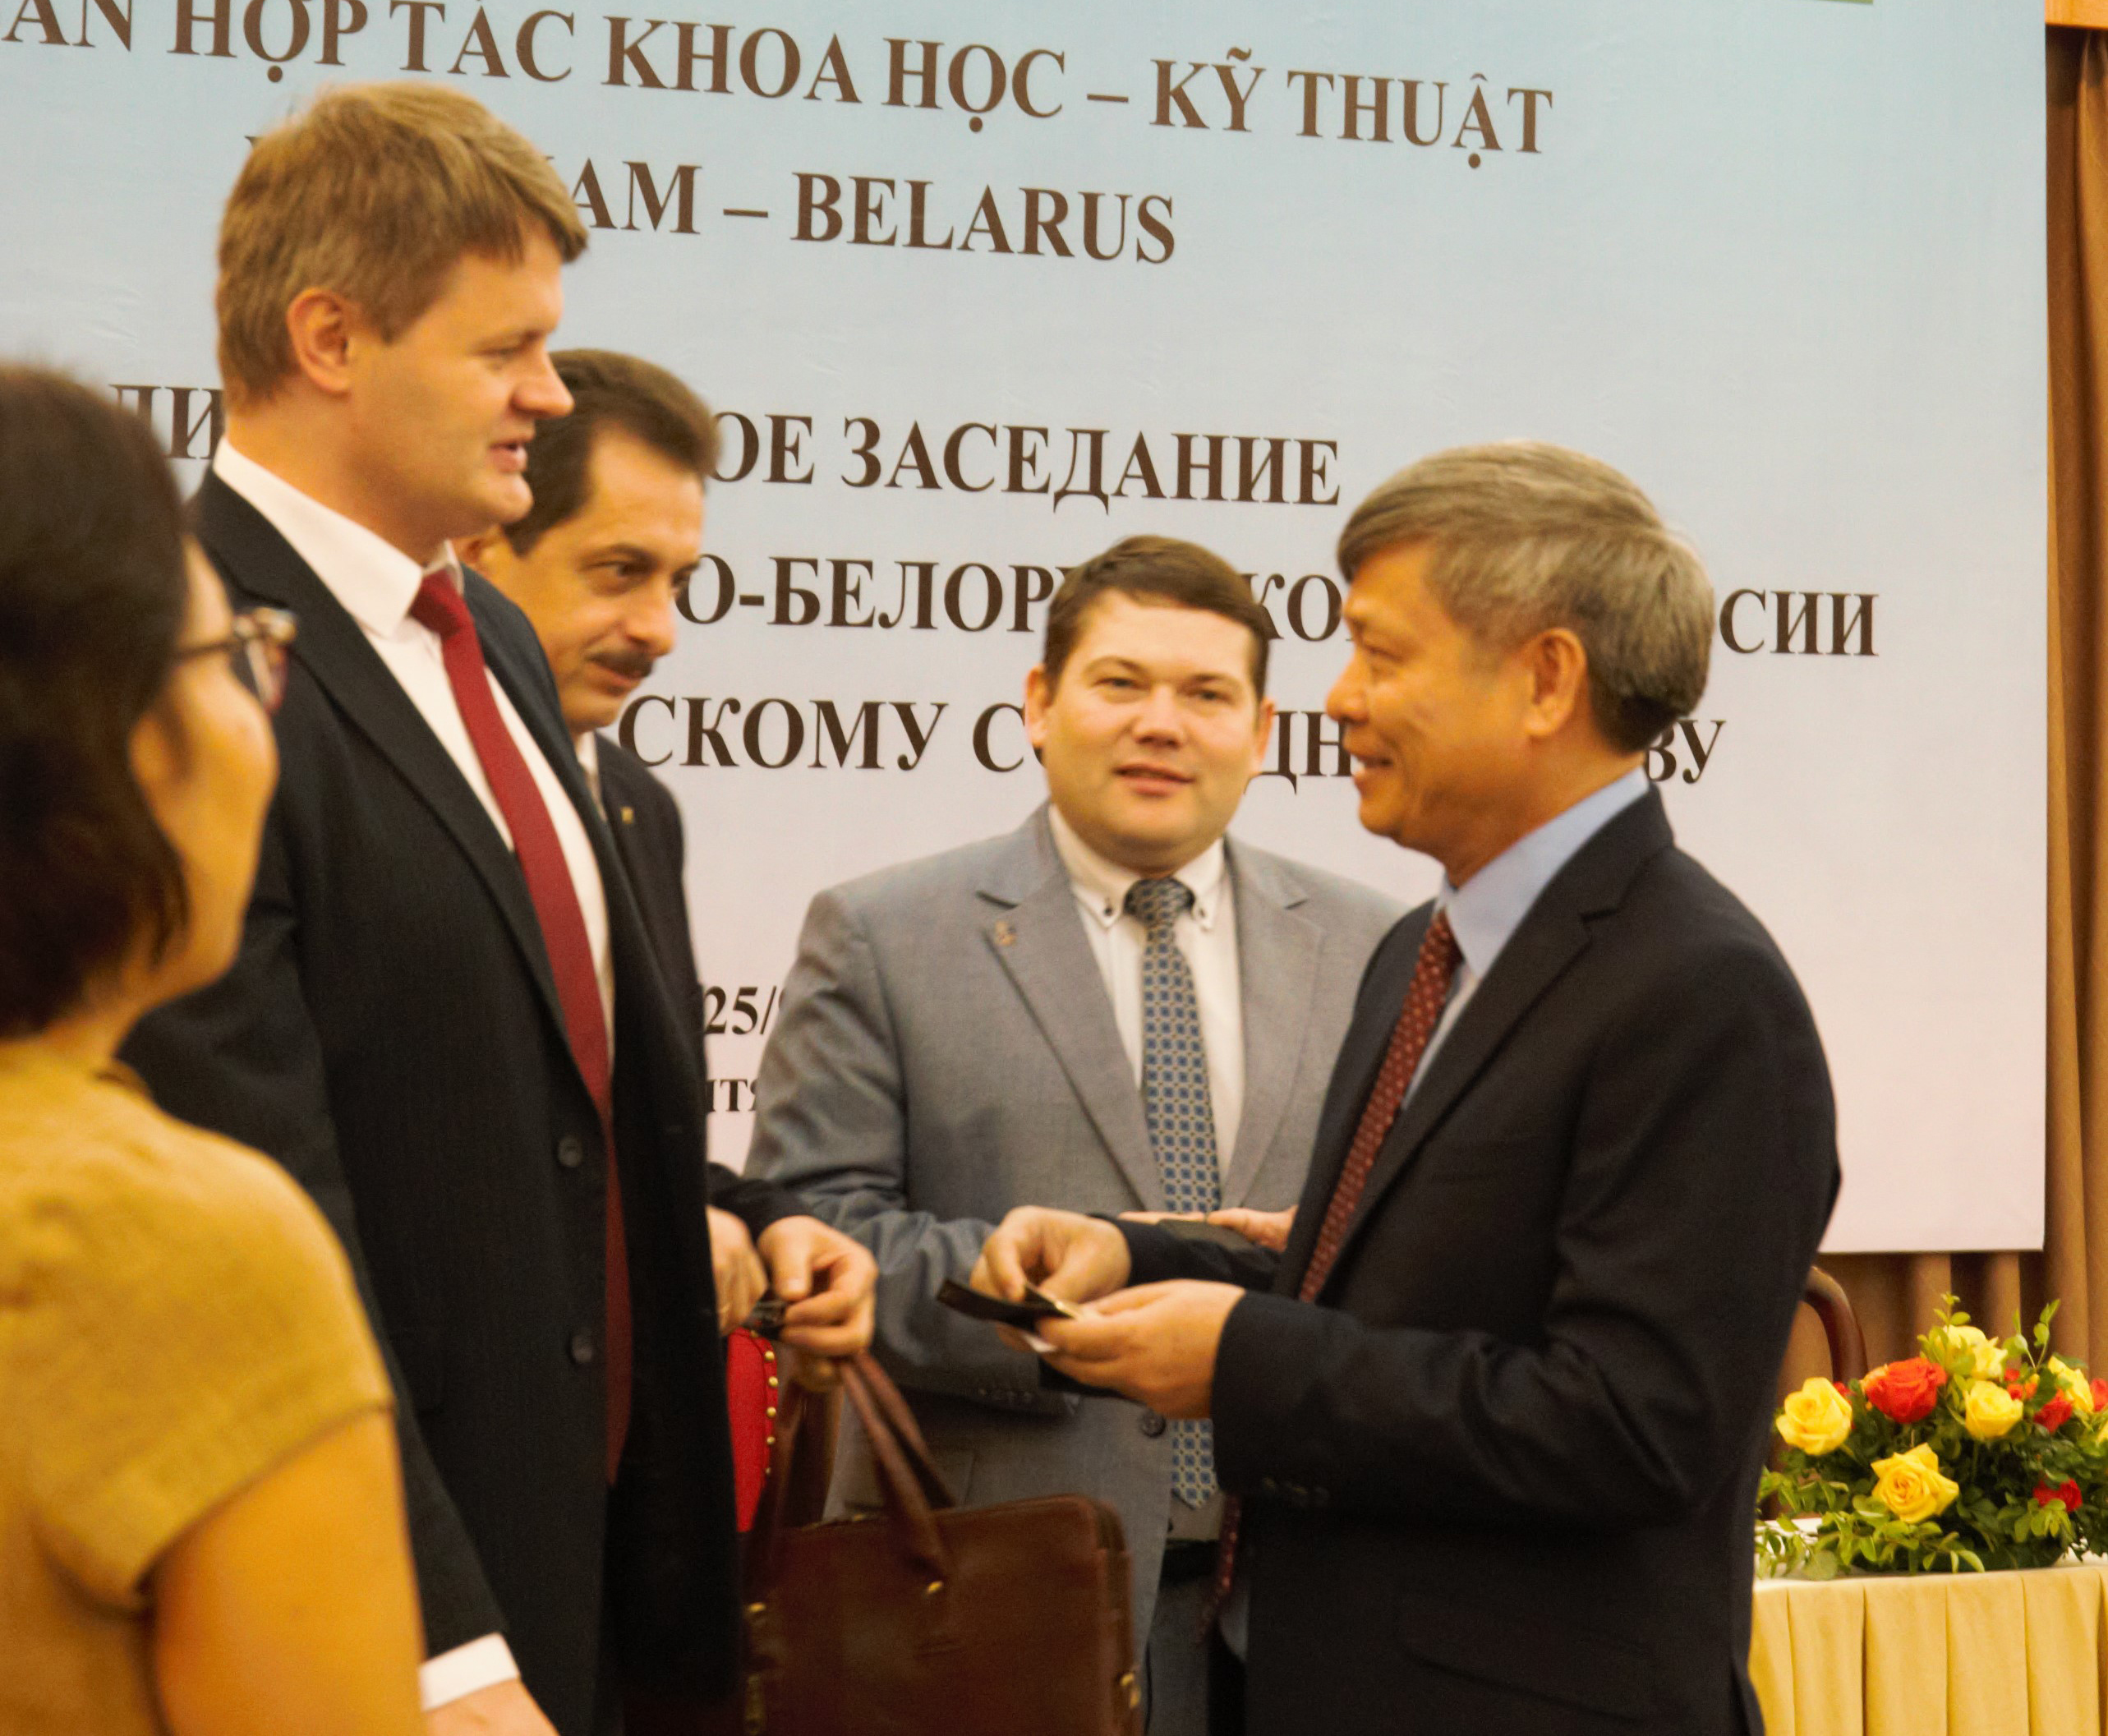 Thứ trưởng Bộ KH&CN Phạm Công Tạc trao đổi với Phó chủ nhiệm Ủy ban KH&CN Belarus Sergei Sergeievich Sherbakov (ngoài cùng bên trái) và các nhà nghiên cứu trường Đại học Tổng hợp Belarus, trường Đại học Công nghệ thông tin và vô tuyến điện Belarus.